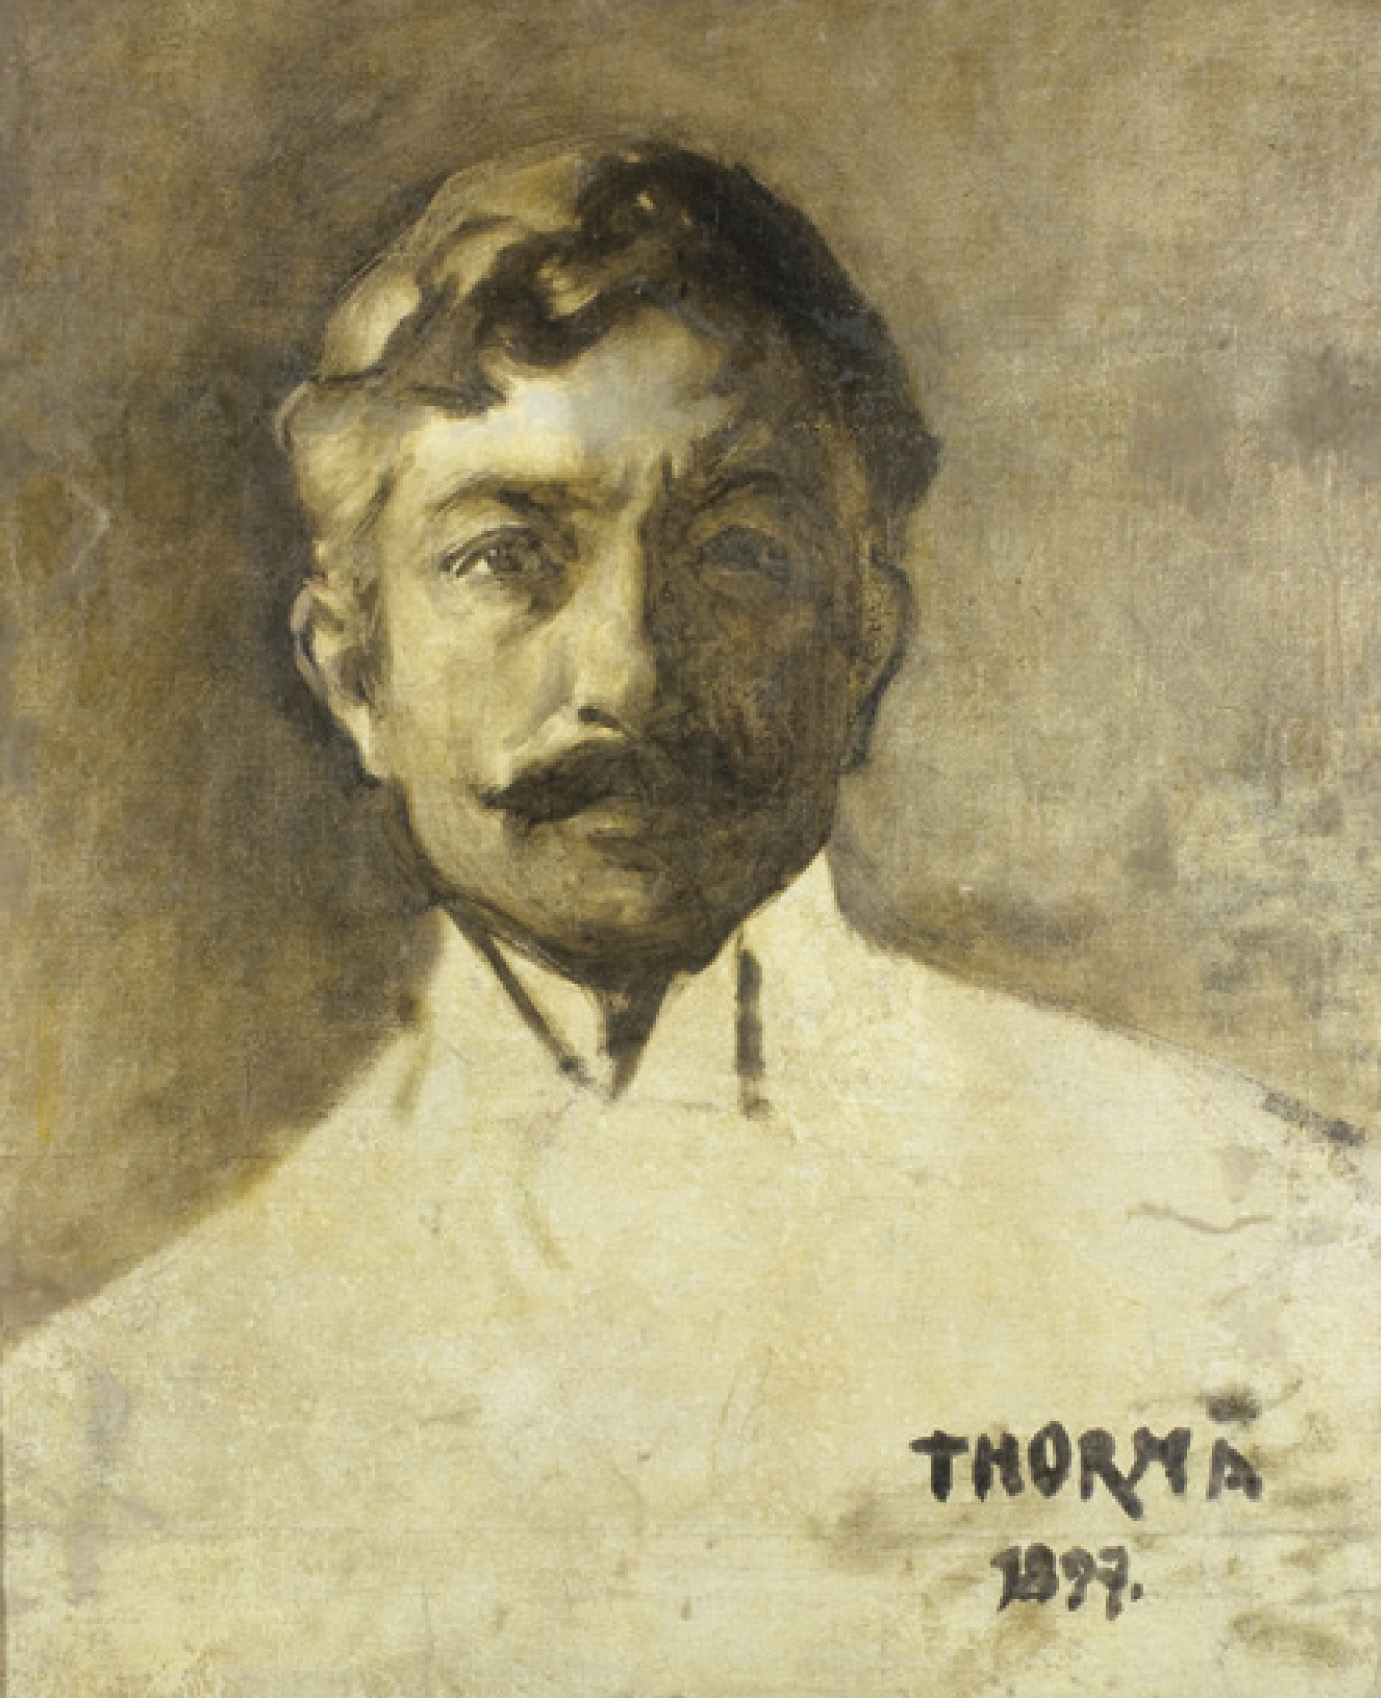 Thorma János: Önarckép, 1897, olaj, vászon, 55×45 cm j.j.l. Thorma 1897. Magyar Nemzeti Galéria, Budapest